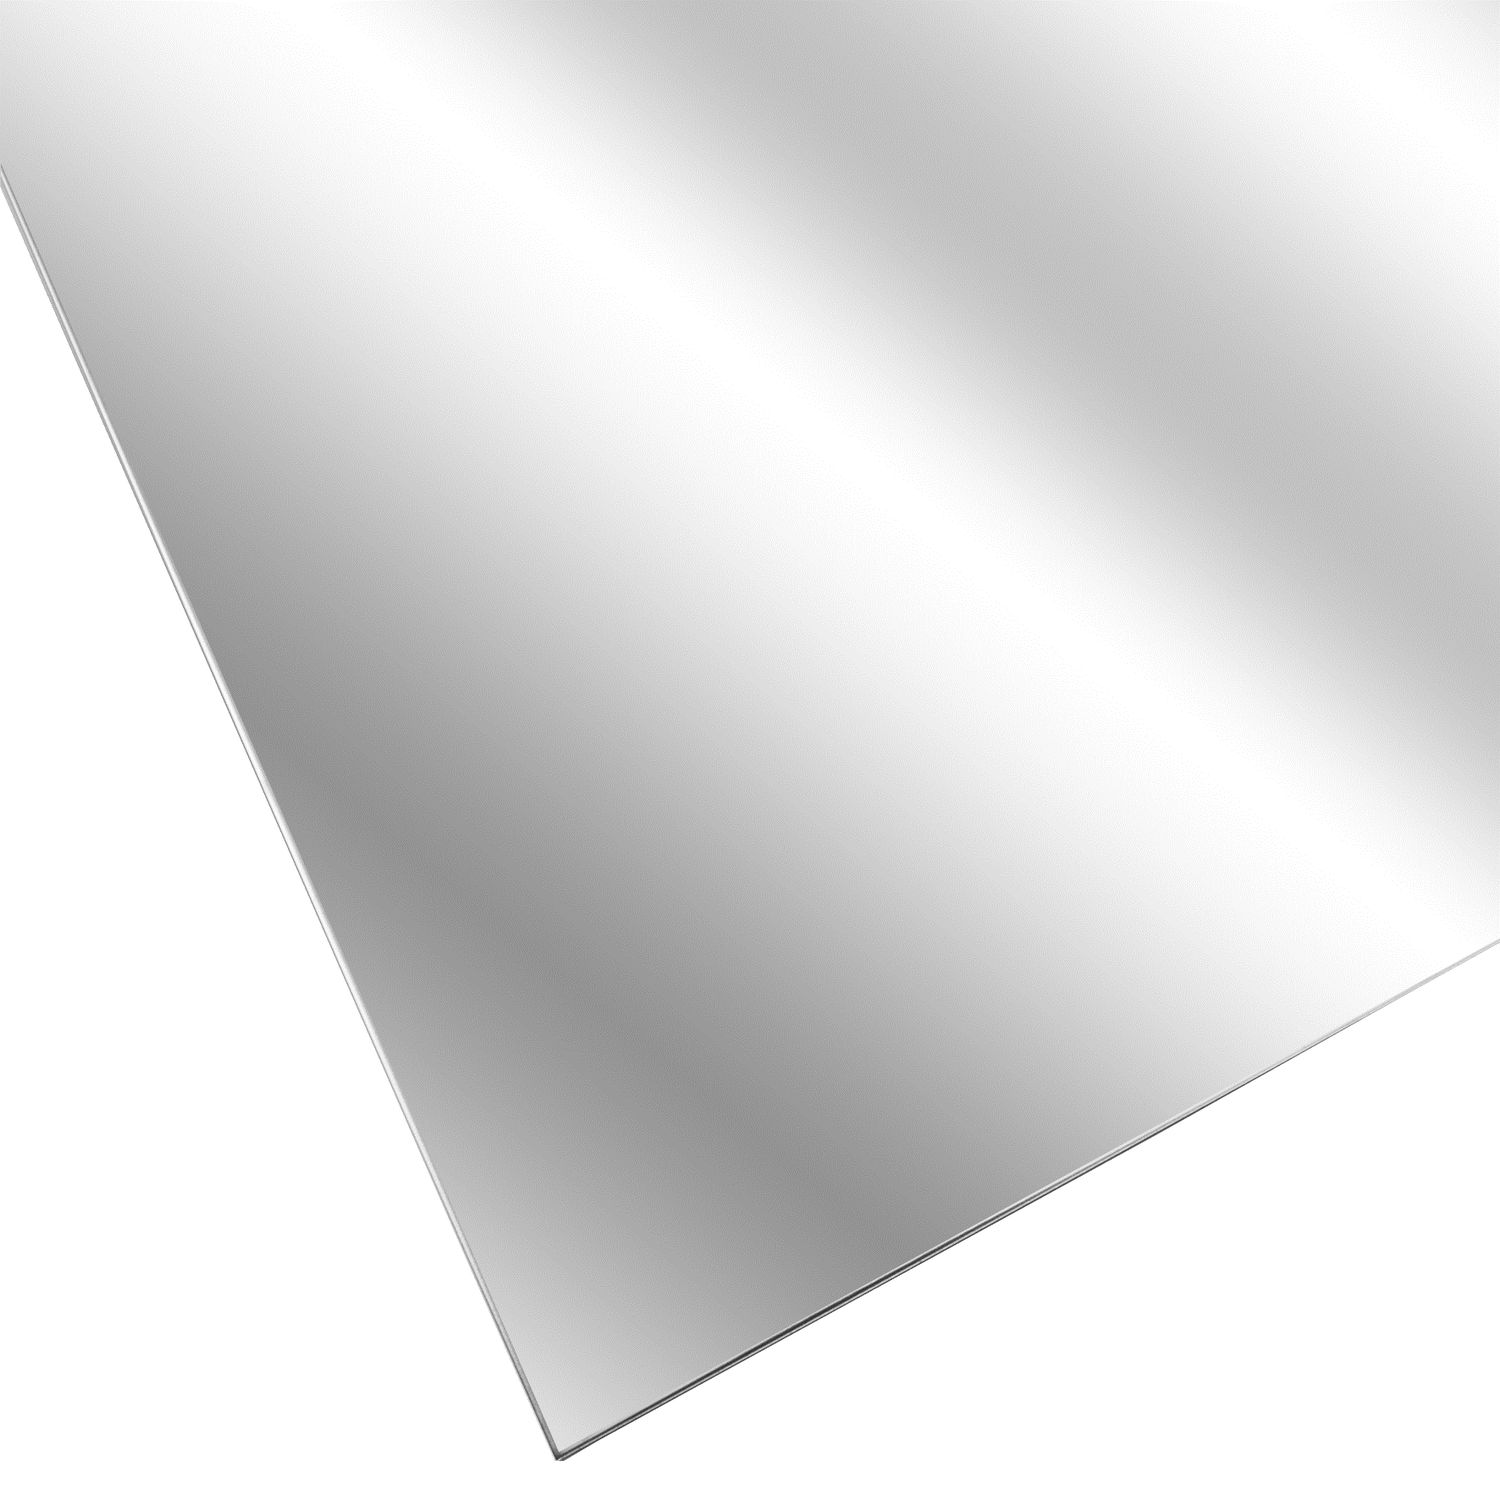 40 x 90 cm 0,80 mm stark foliert B&T Metall Edelstahl V2A Blech-Zuschnitt geschliffen K240 Größe 400 x 900 mm 